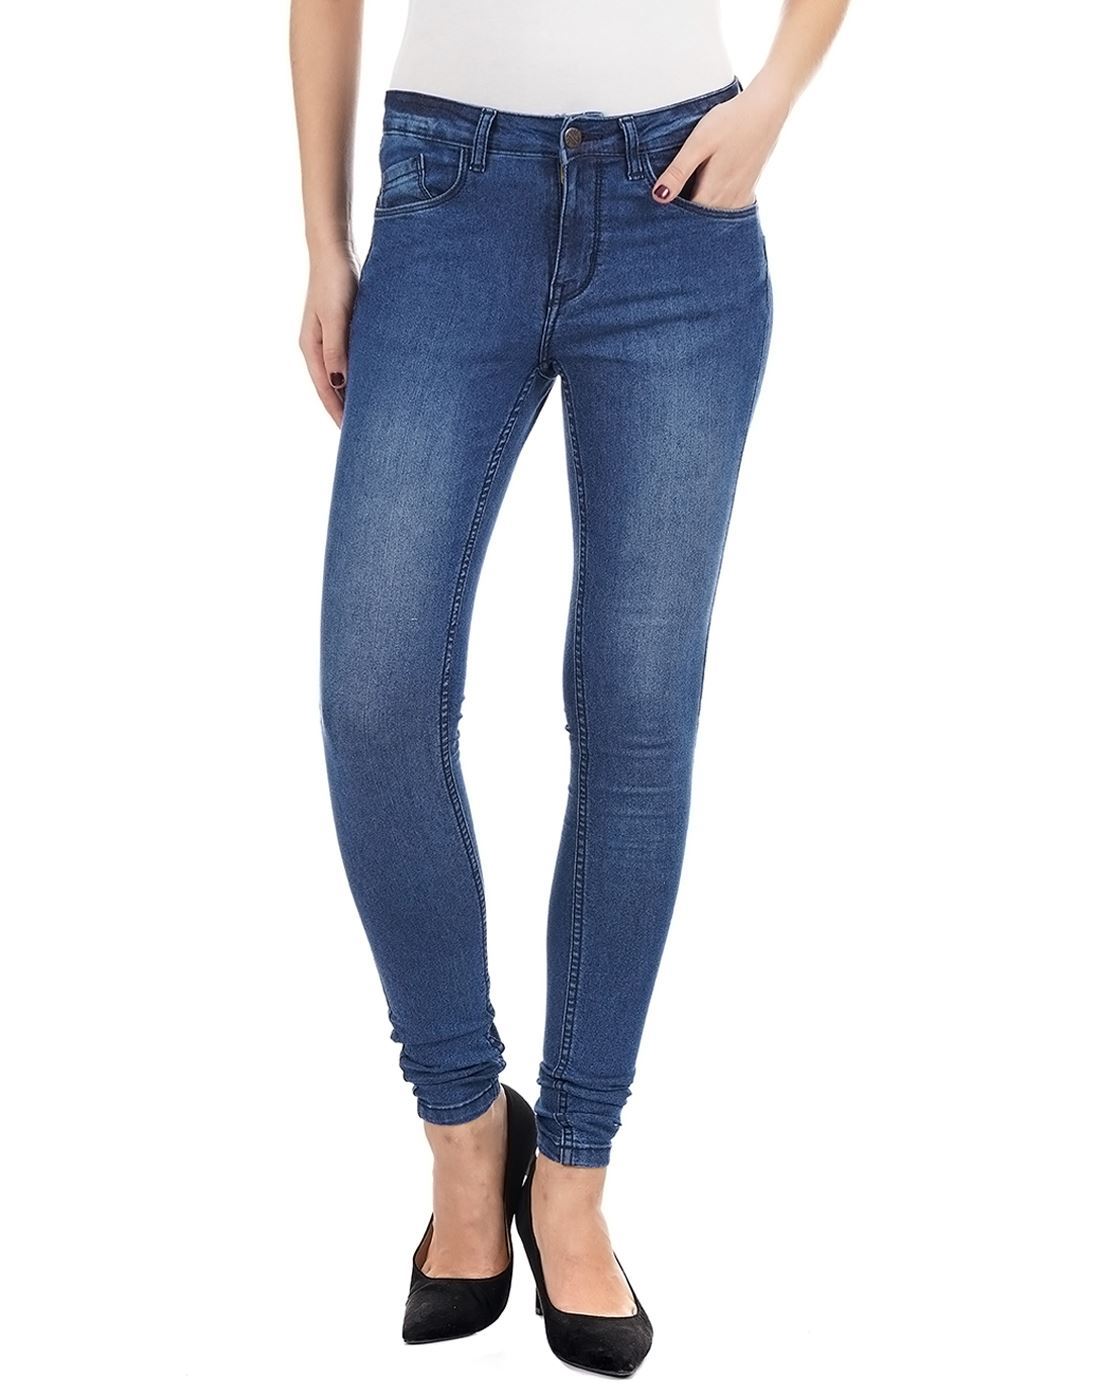 Carrera Women Casual Wear Blue Jeans